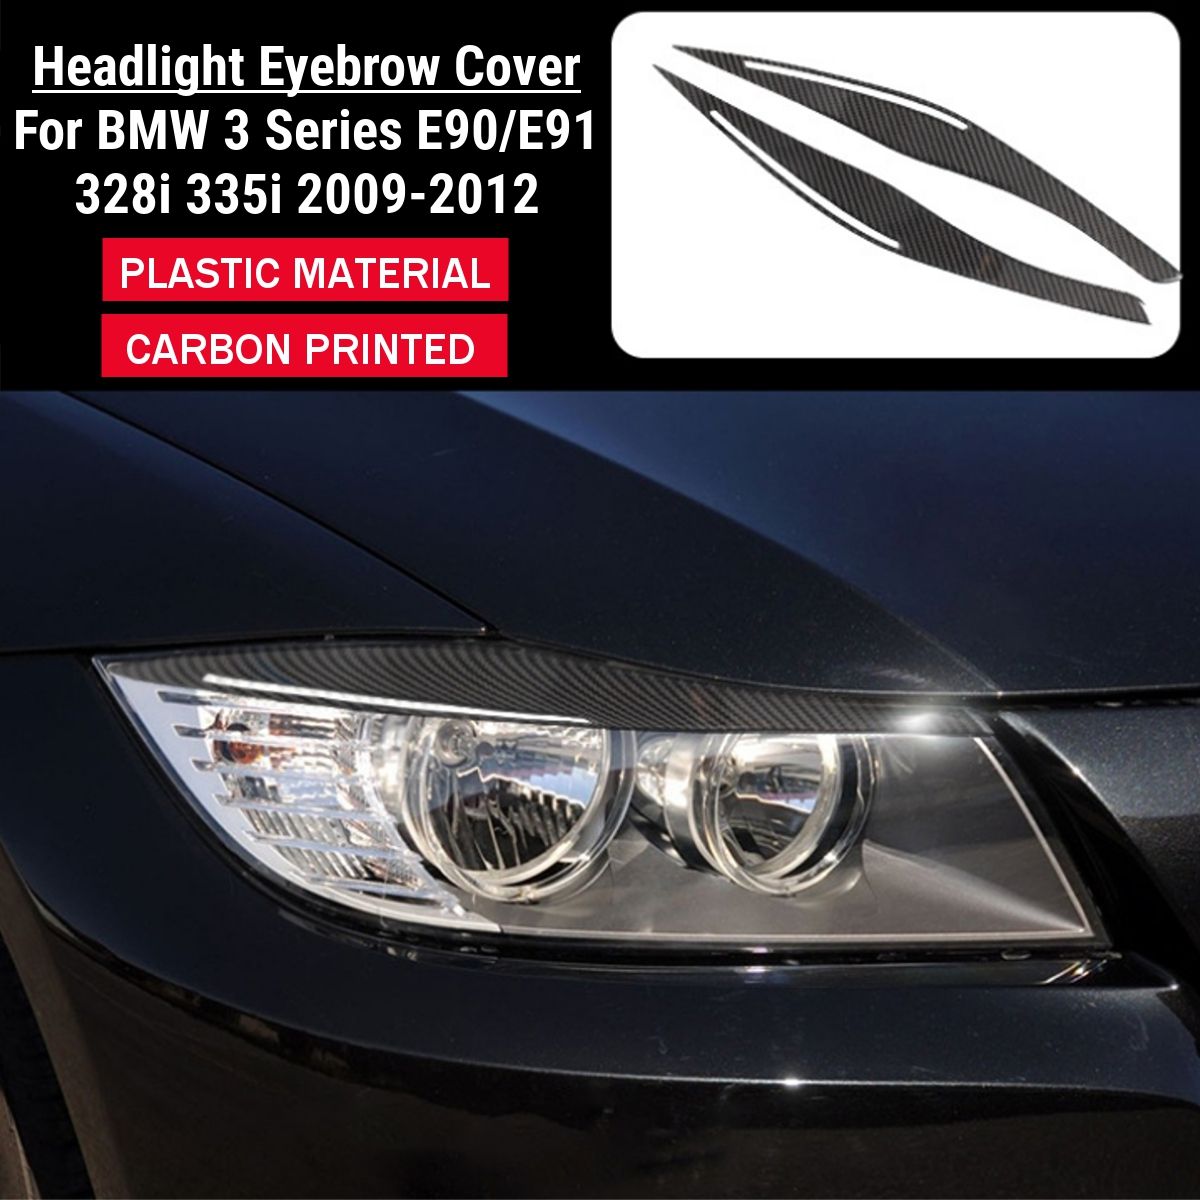 Headlight-Eyebrow-Eyelid-Cover-Carbon-Printed-Pair-For-BMW-E90-E91-M3-328i-335i-2009-2012-1740020